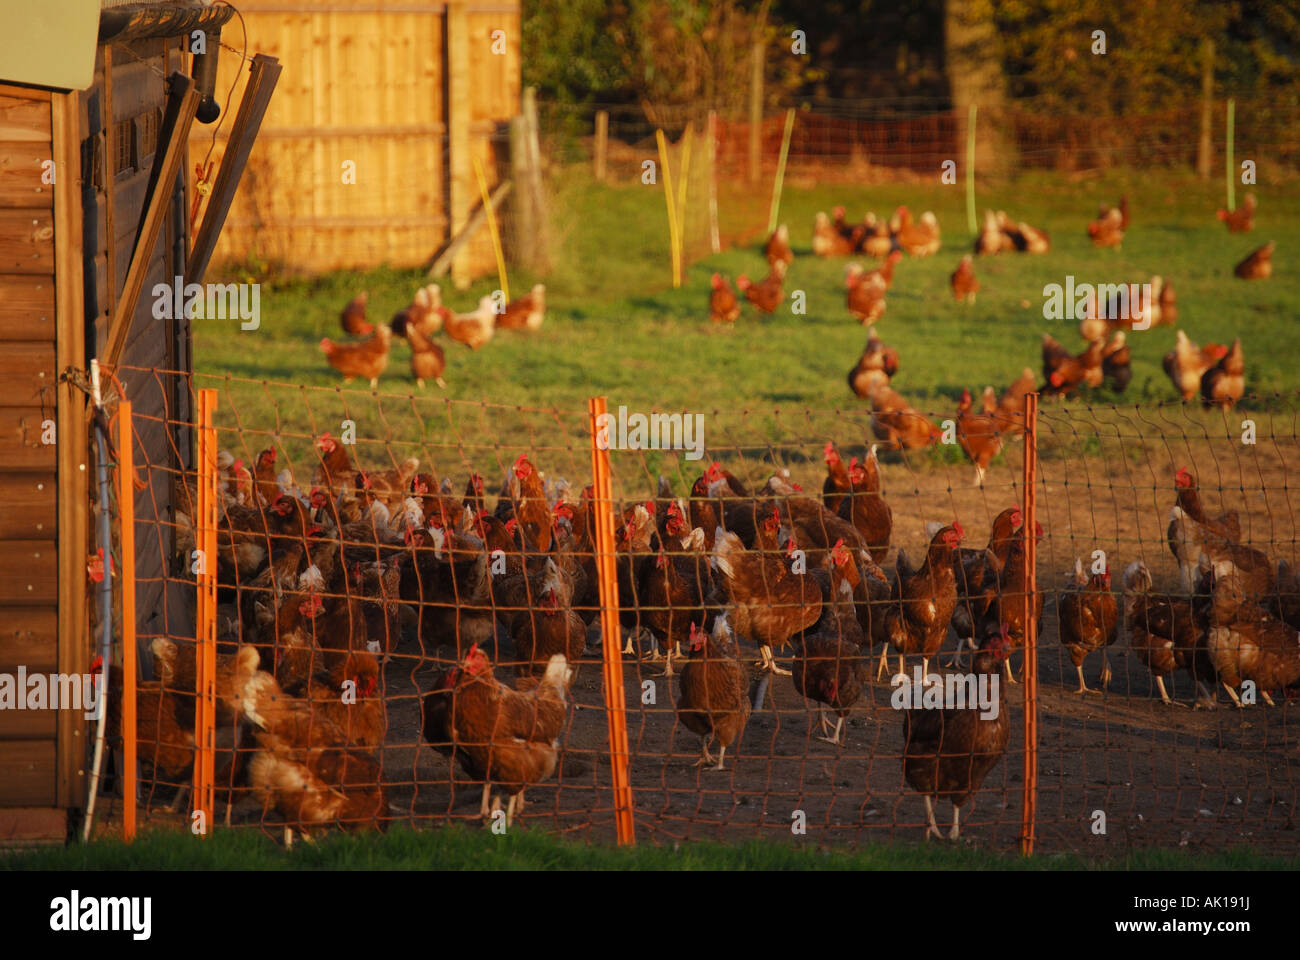 Freilandhaltung Hühnerfarm, Dorset, England, Vereinigtes Königreich Stockfoto